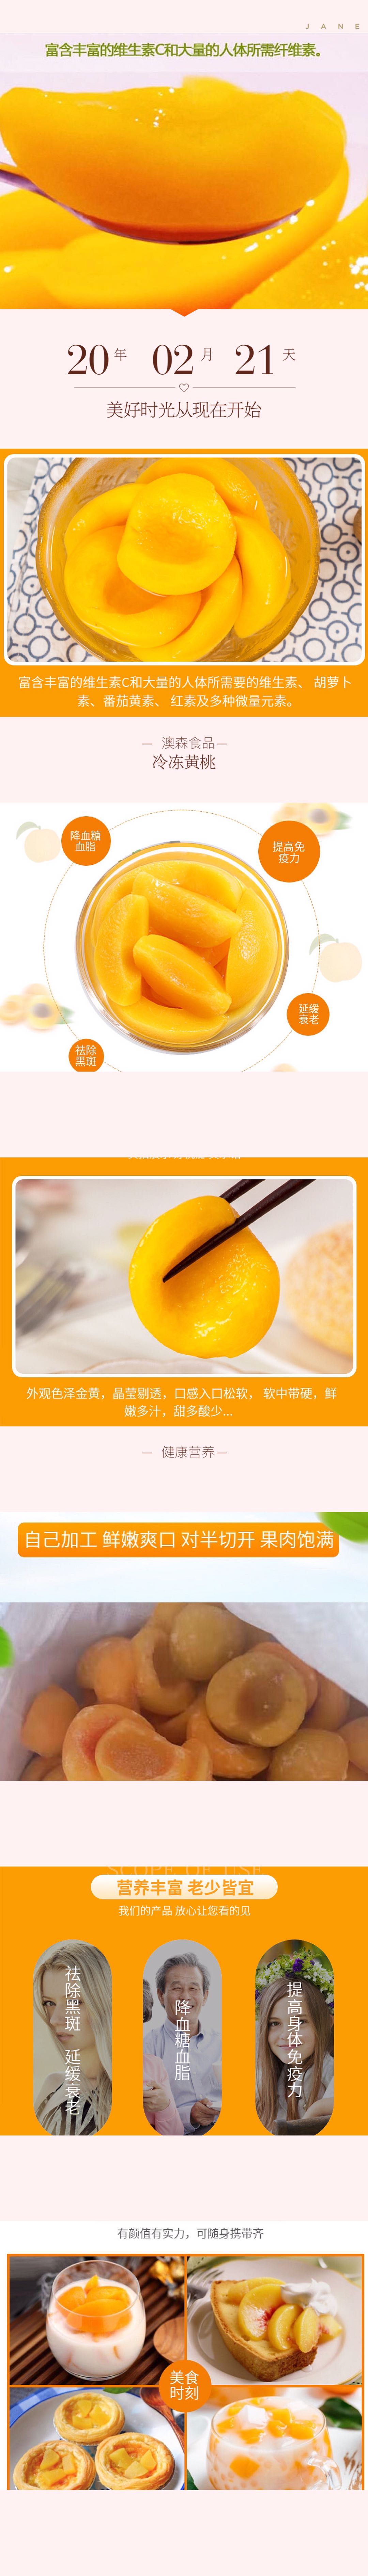 冷凍黃桃.jpg